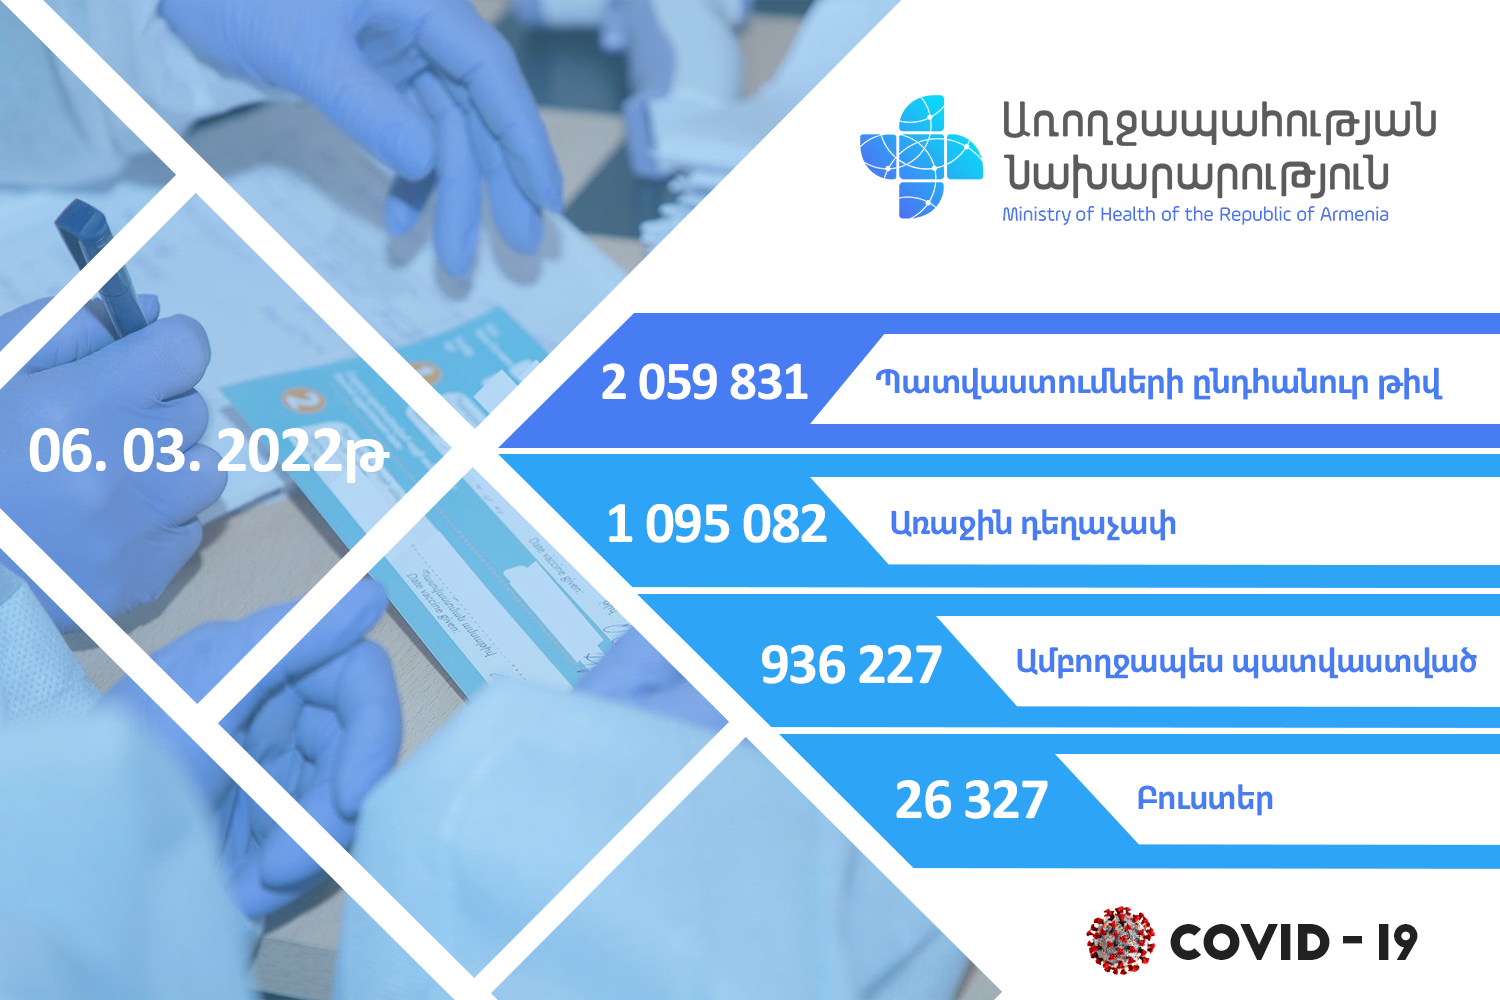 Հայաստանում կորոնավիրուսի դեմ կատարվել է 2059831 պատվաստում